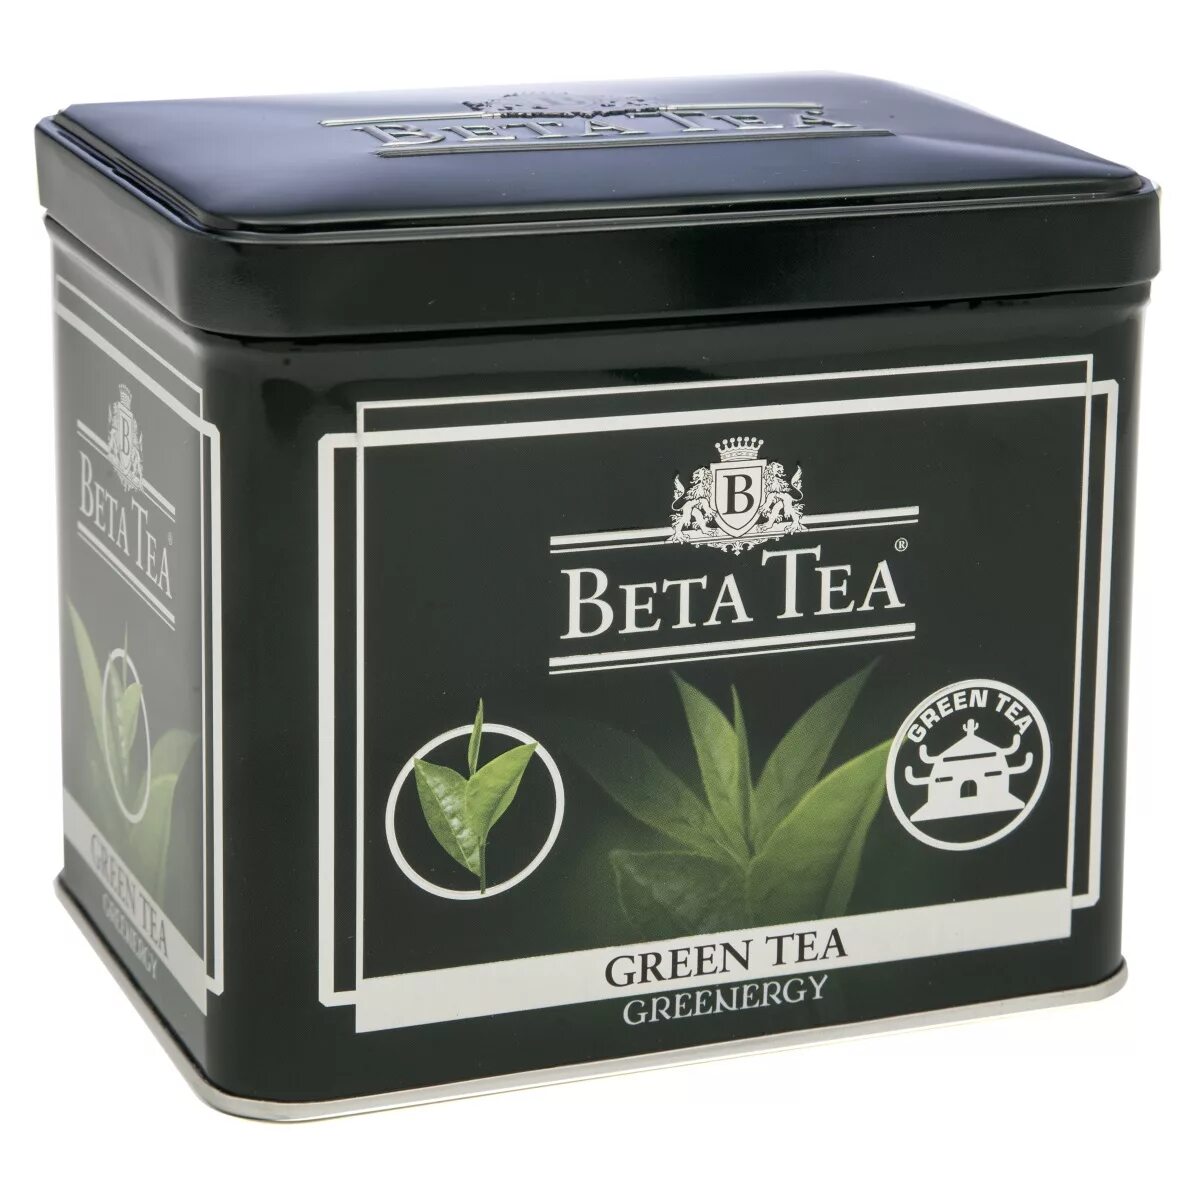 Купить чай теа. Чай бета ж/б 100гр. Чай бета Теа жб. Beta Tea Extra 250г. Теа чай бета зеленый.